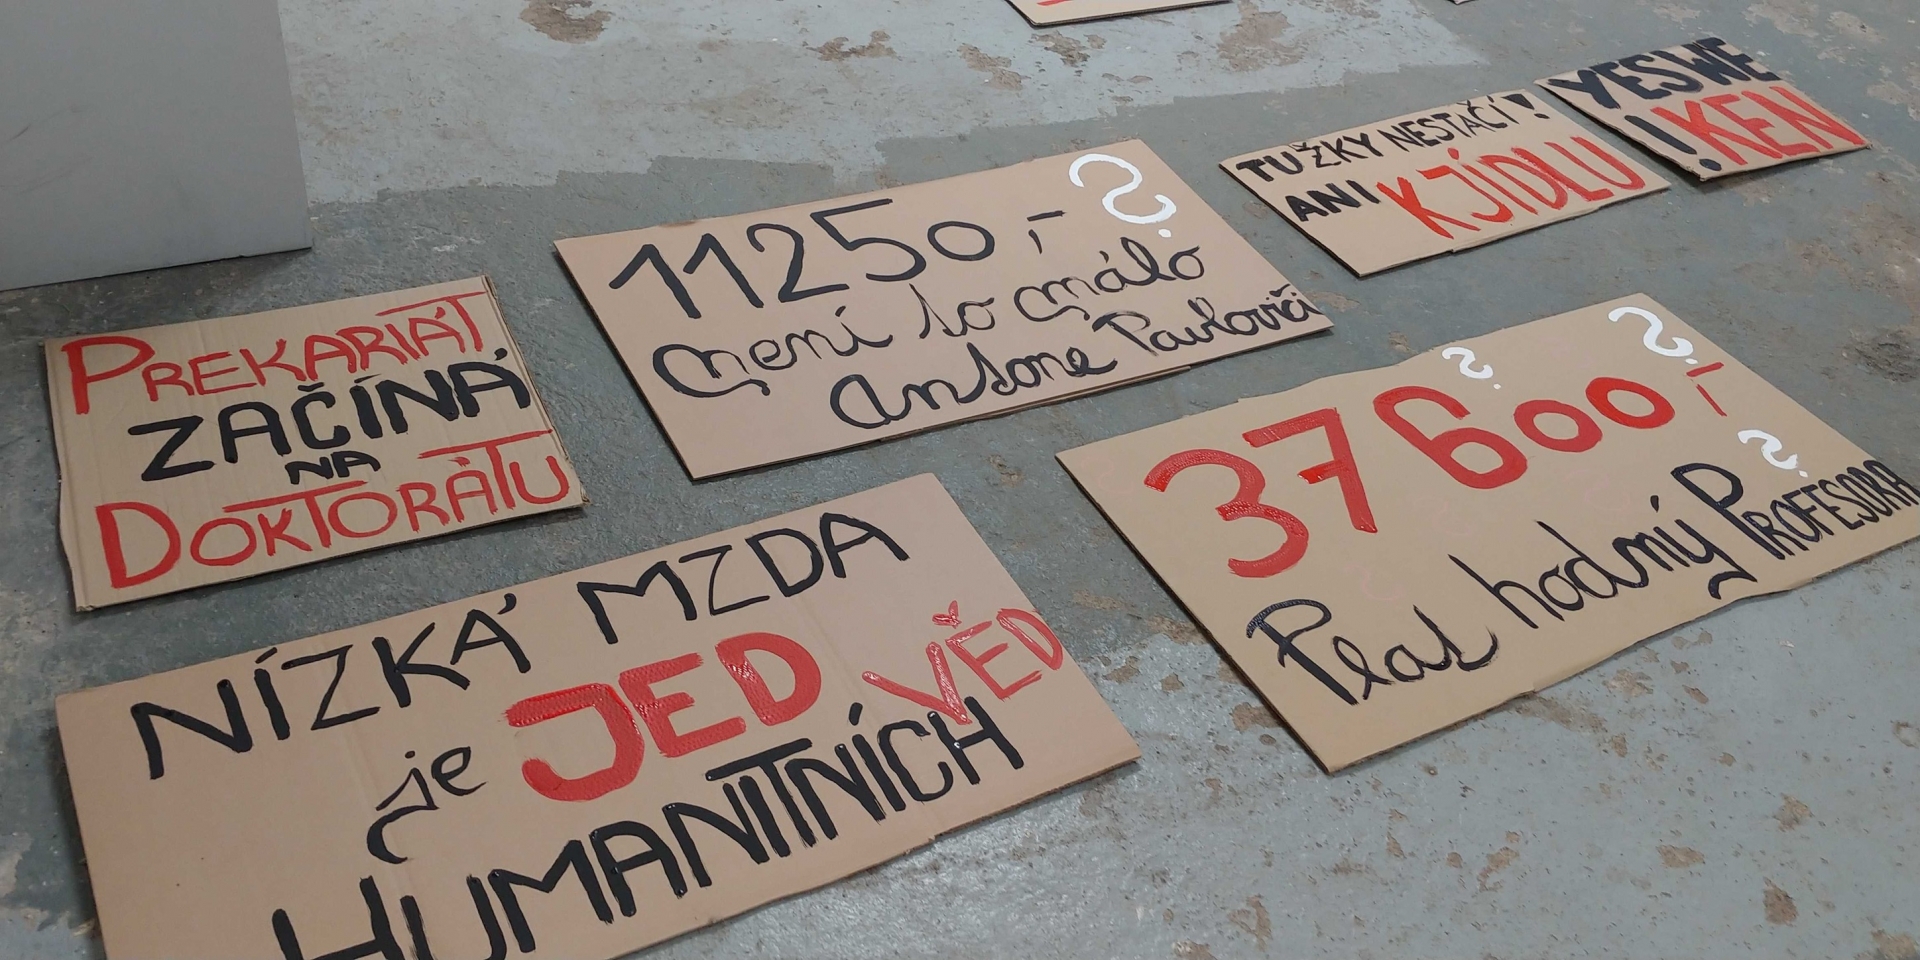 Image Czechy: Nauczyciele akademiccy gotowi do strajku